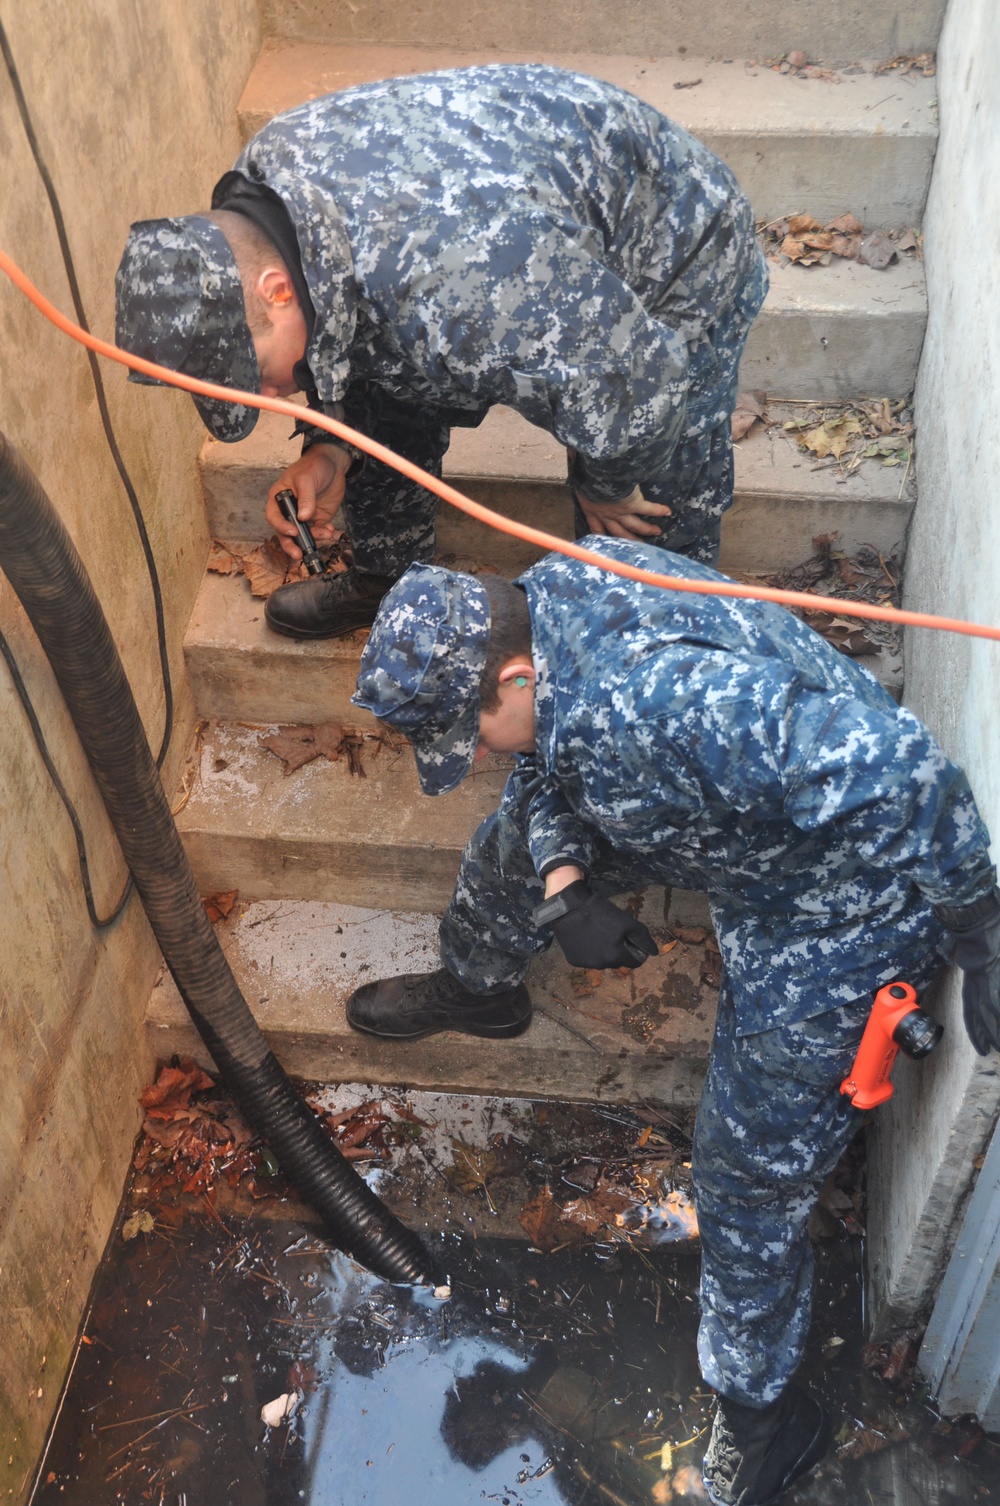 Naval dewatering team in New York